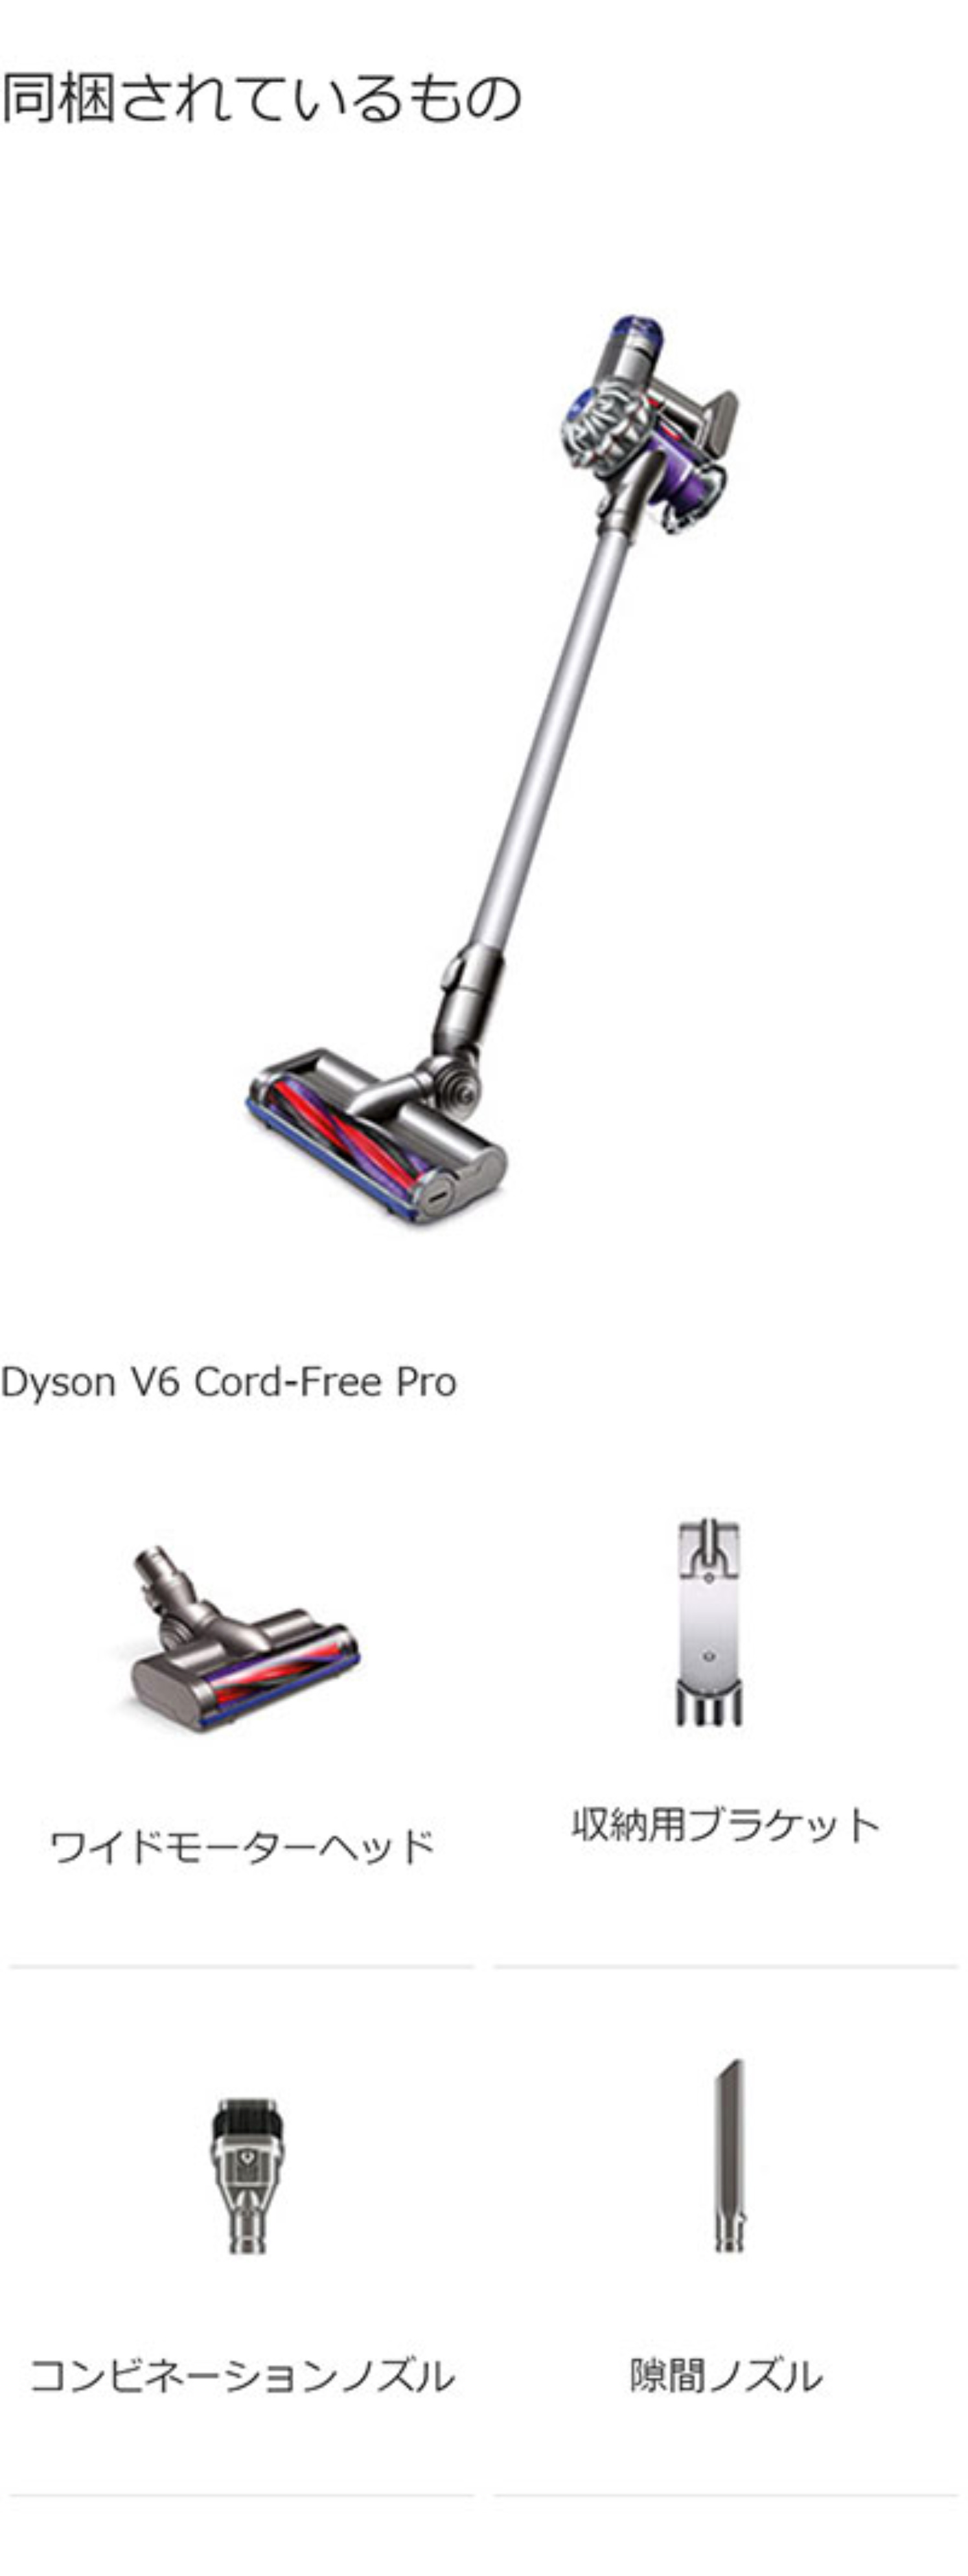 素晴らしい価格 ダイソン v6 cord-free pro - 掃除機 - www.smithsfalls.ca